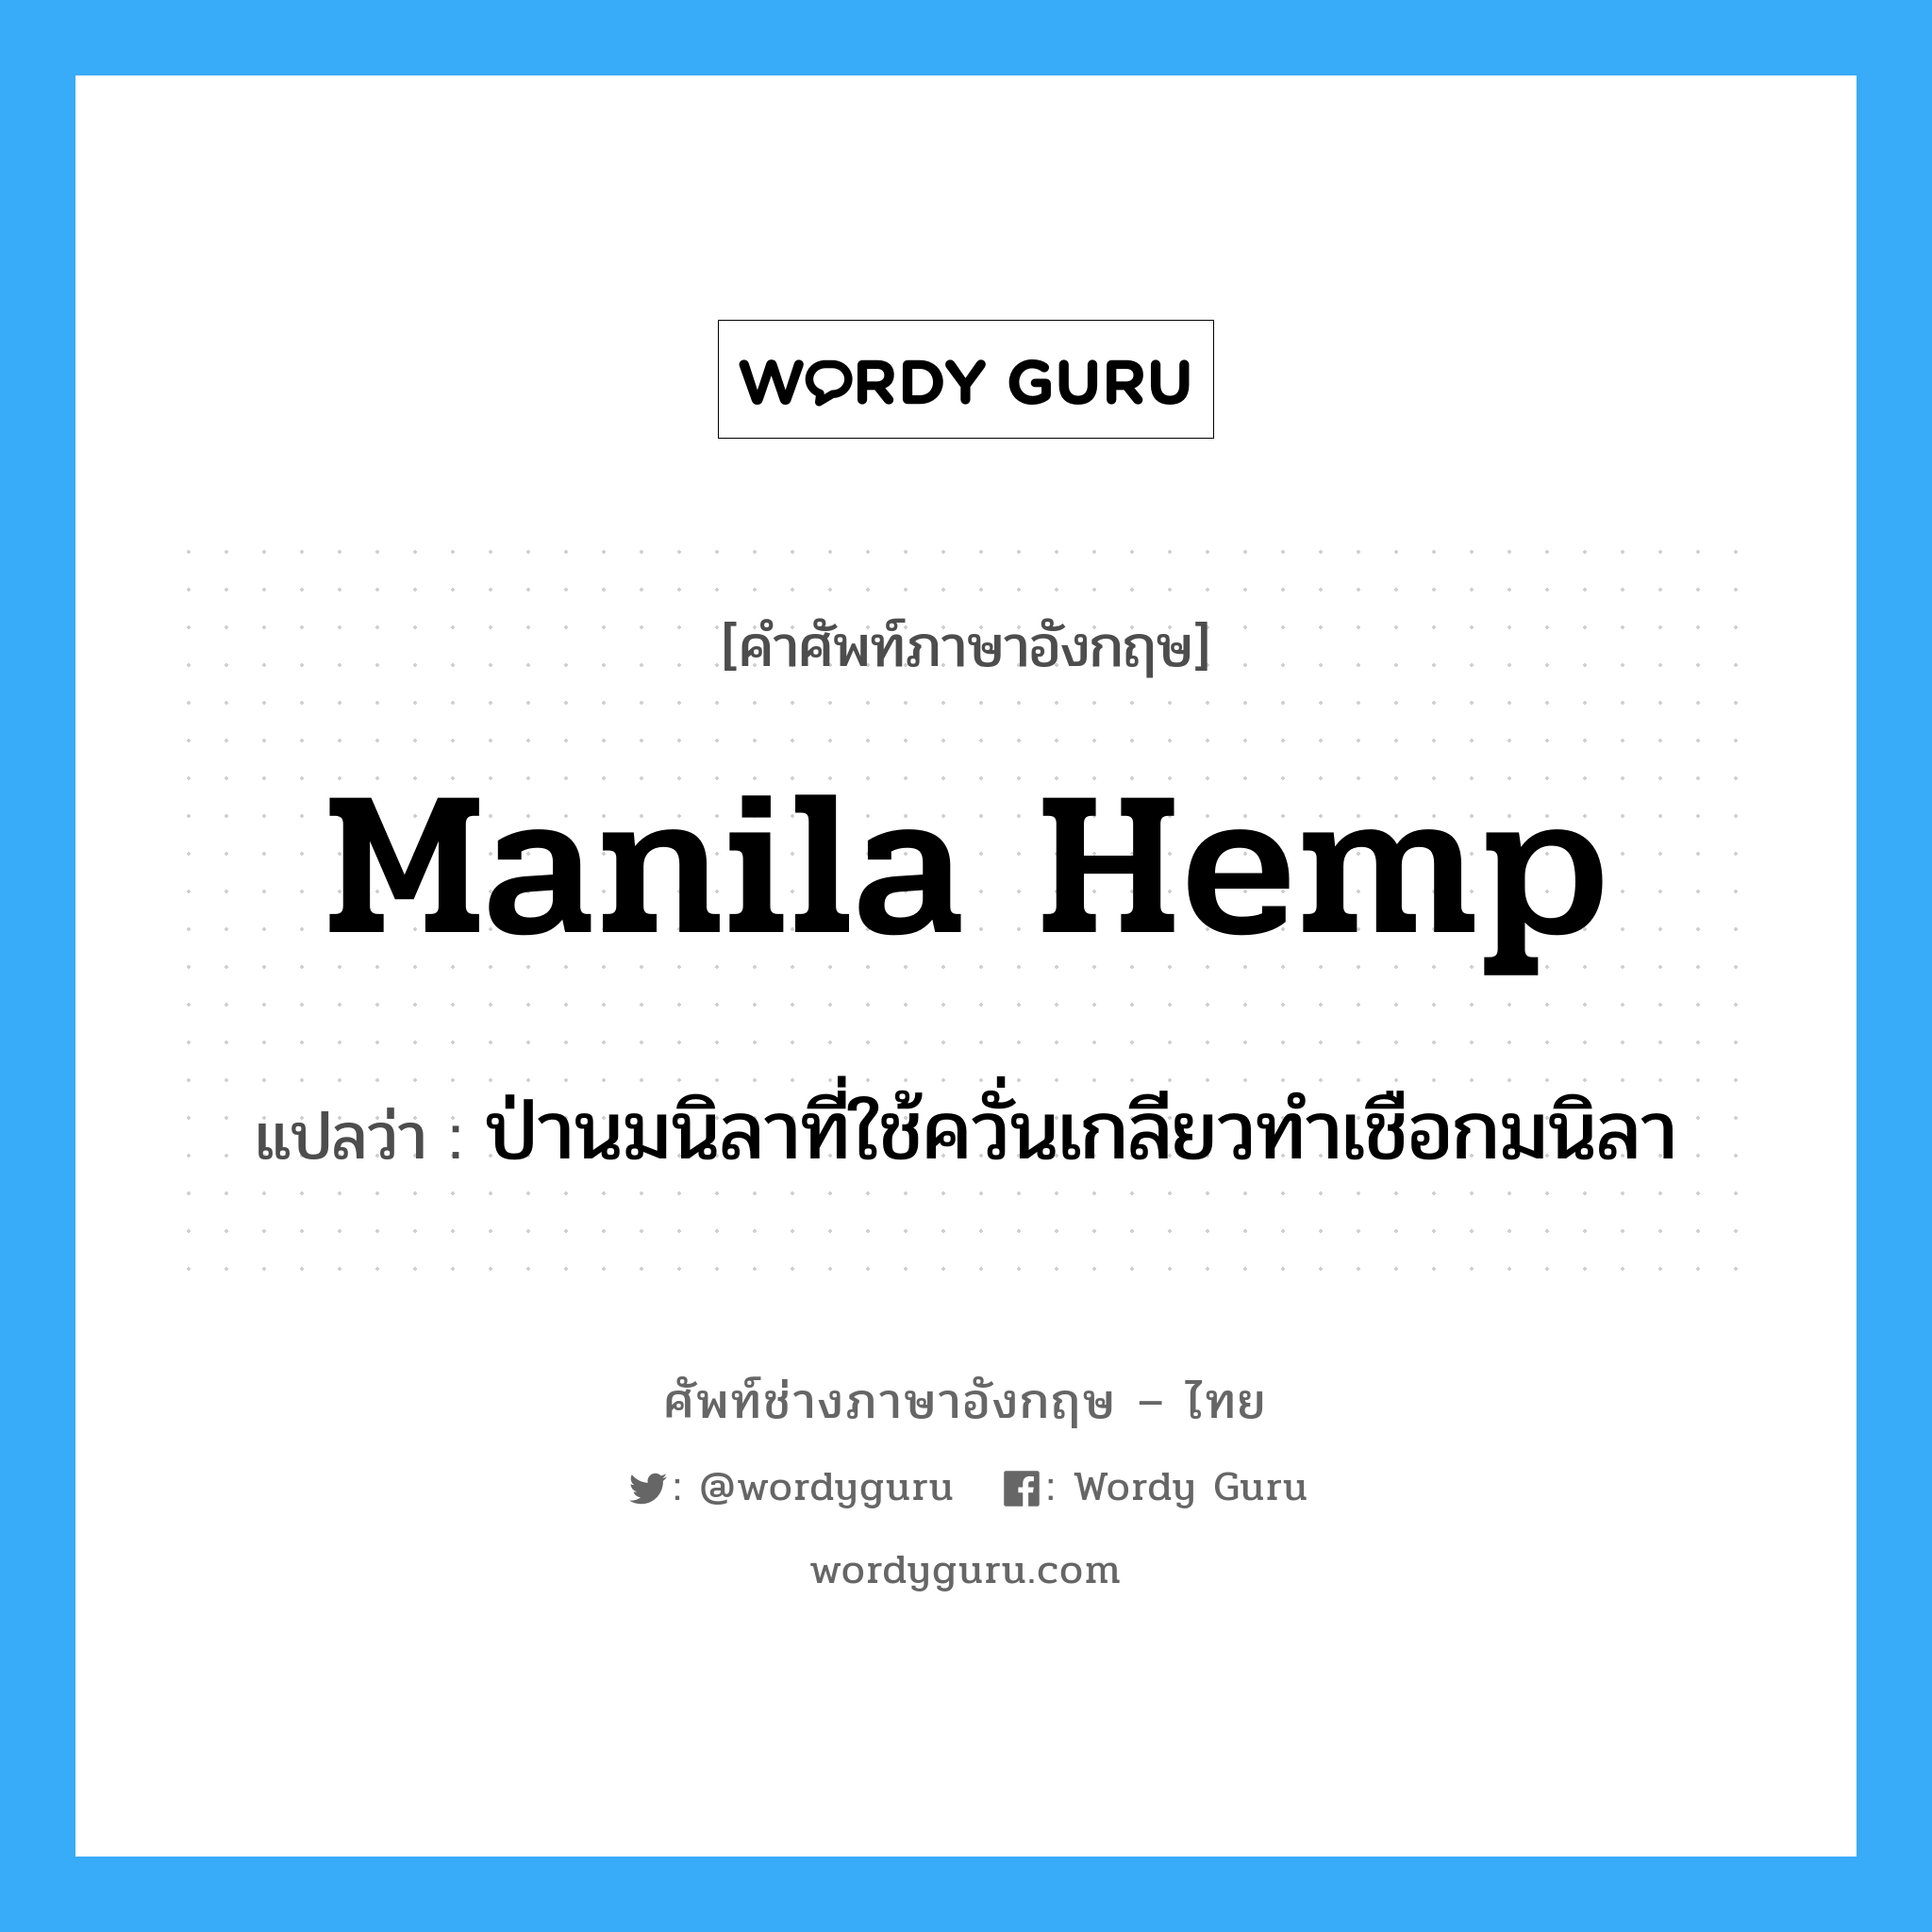 manila hemp แปลว่า?, คำศัพท์ช่างภาษาอังกฤษ - ไทย manila hemp คำศัพท์ภาษาอังกฤษ manila hemp แปลว่า ป่านมนิลาที่ใช้ควั่นเกลียวทำเชือกมนิลา